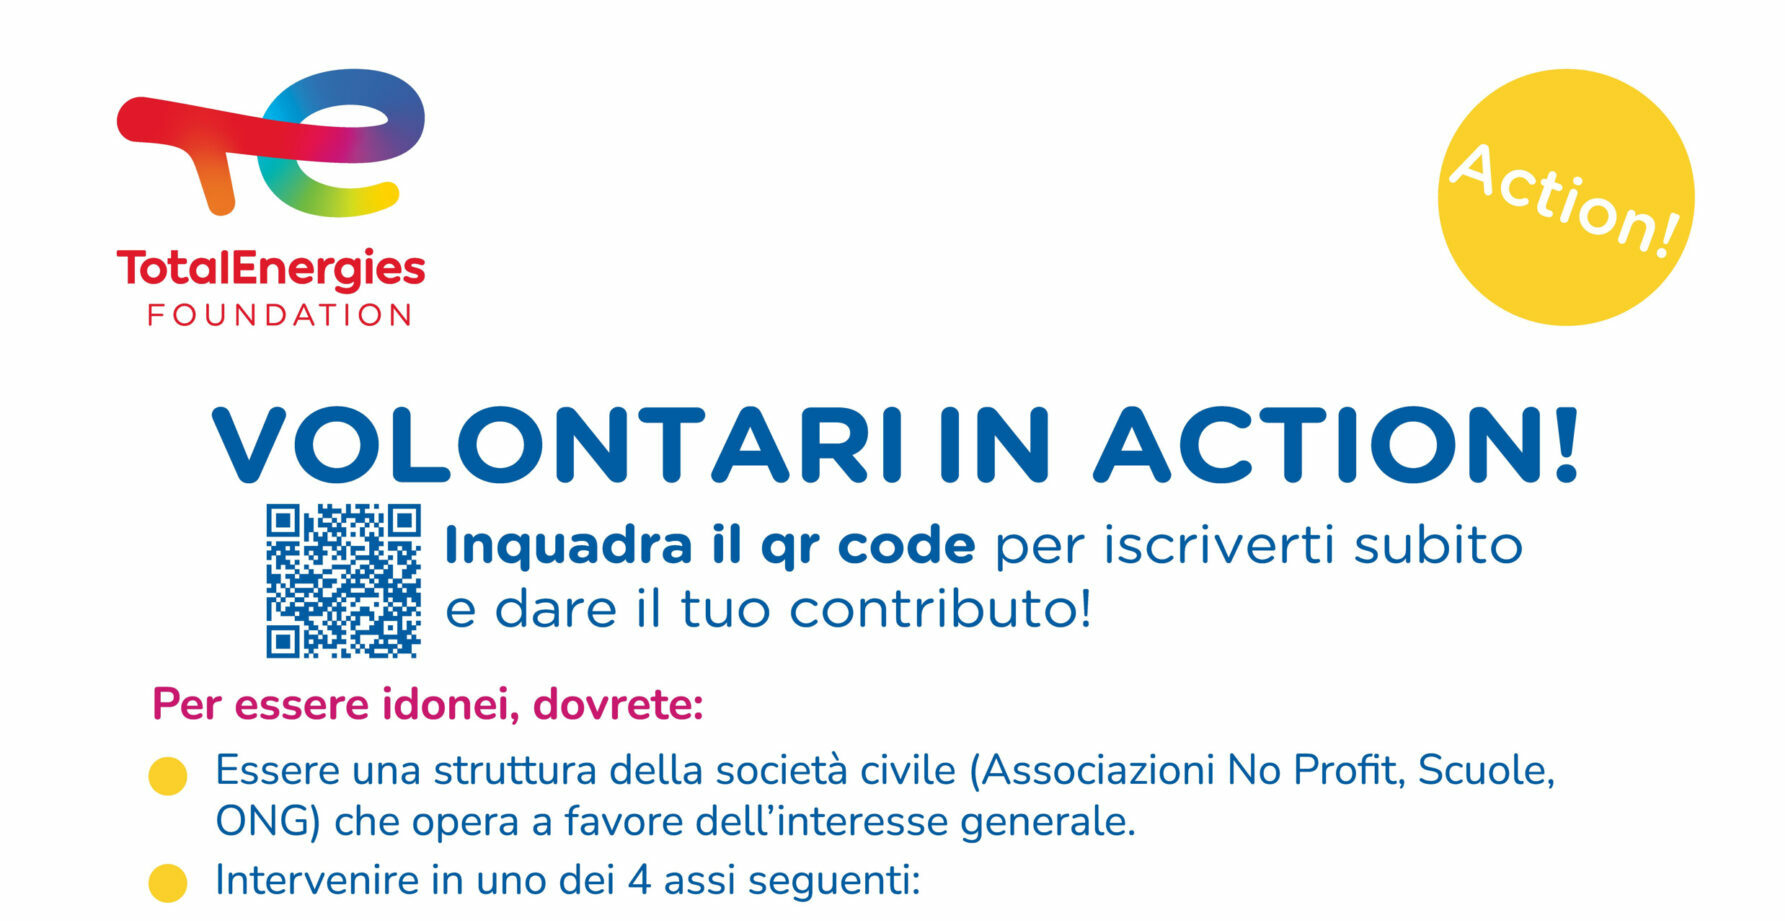 Al via in Basilicata il progetto “Action!”: ONG, associazioni no profit e scuole lucane possono aderire e avvalersi del volontariato dei dipendenti di TotalEnergies